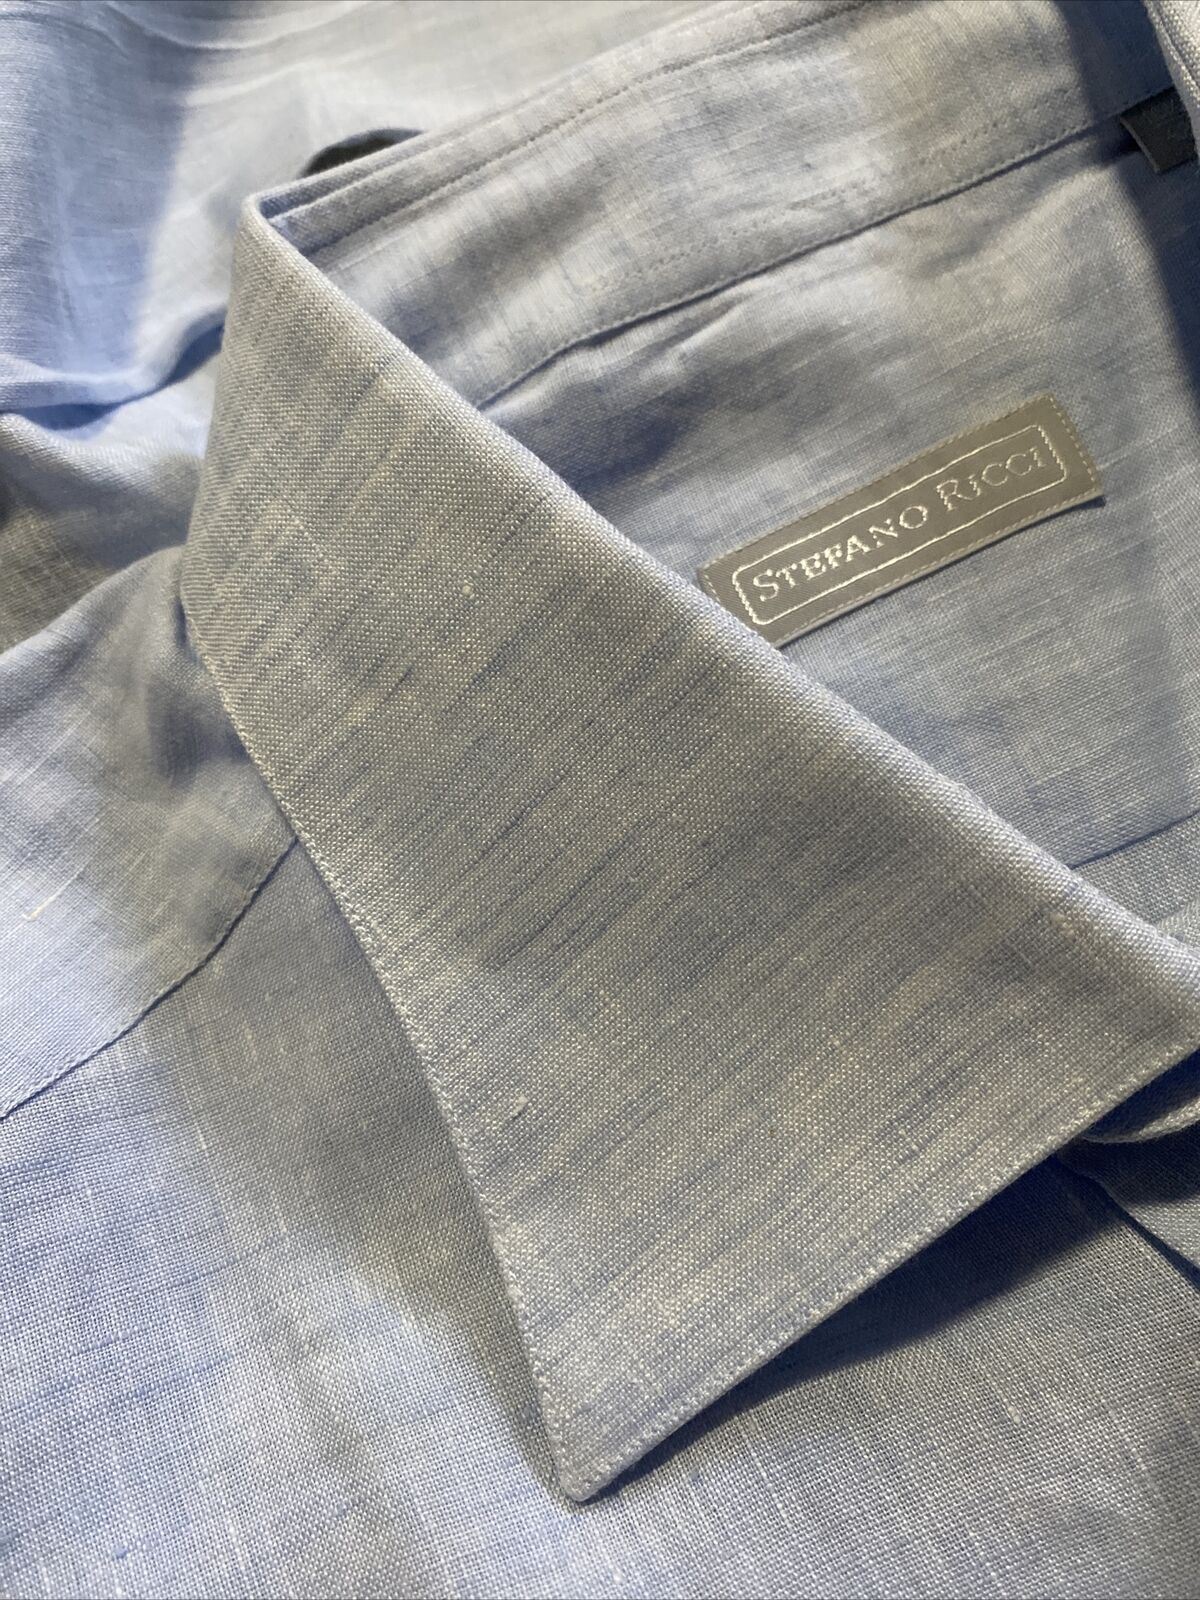 NWT $750 Stefano Ricci Мужская льняная классическая рубашка LT Синий 16.5/42 Италия